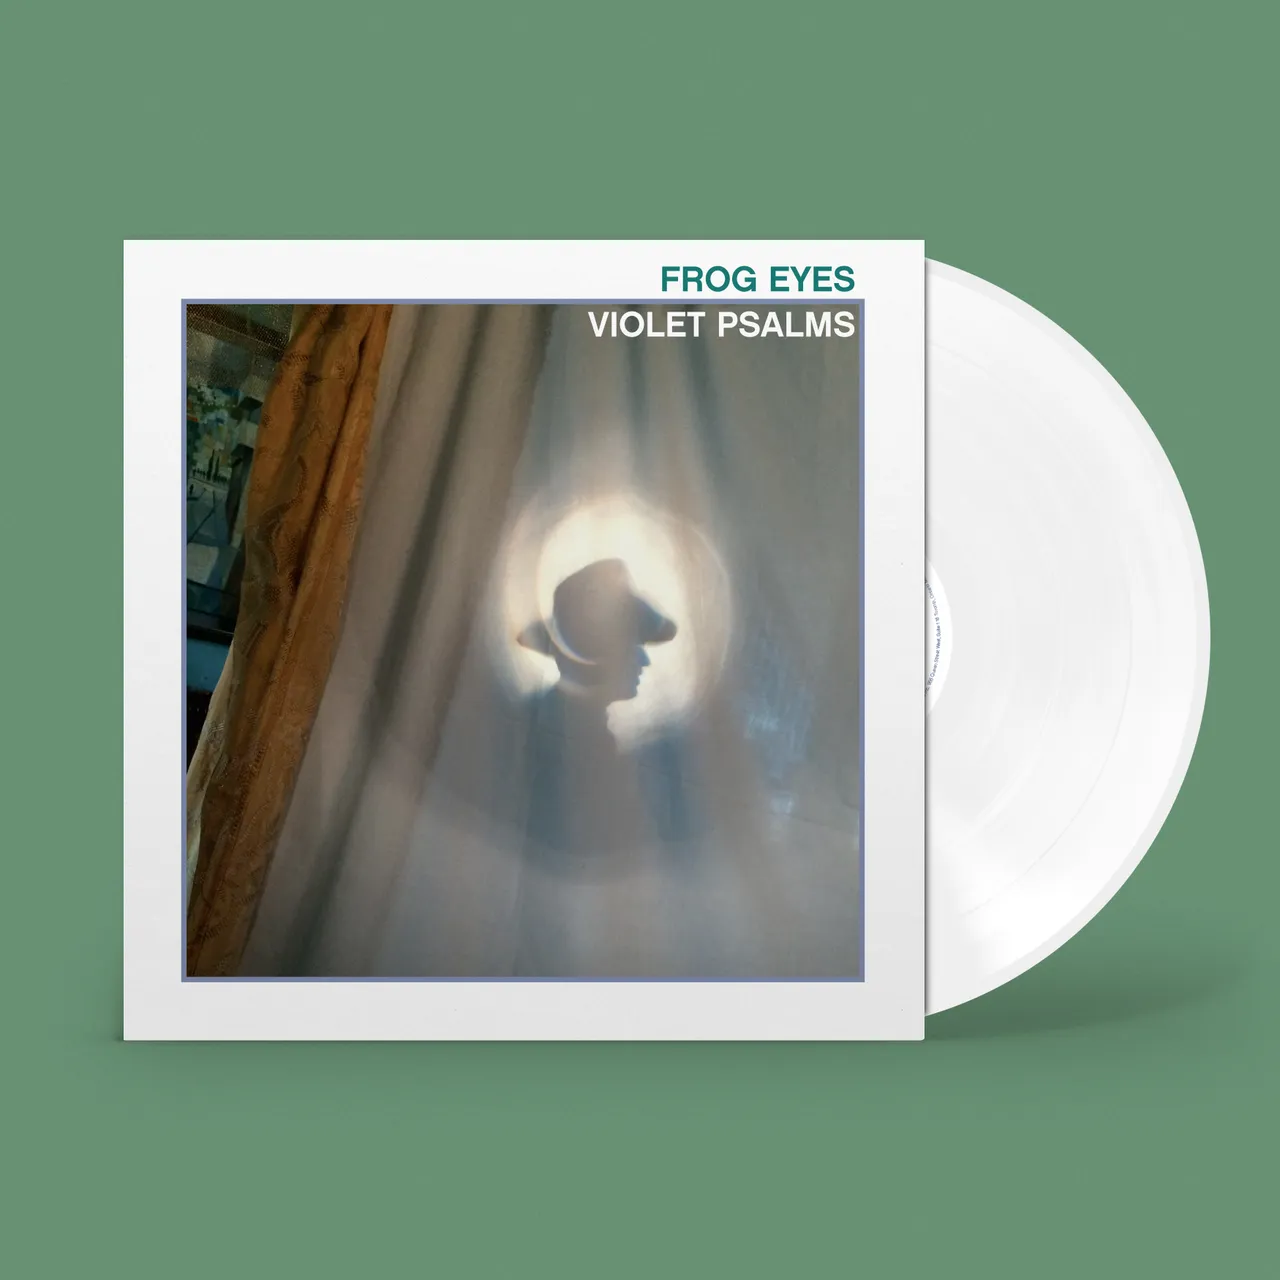 Frog Eyes - "Violet Psalms" Limited Edition White Vinyl photo 3